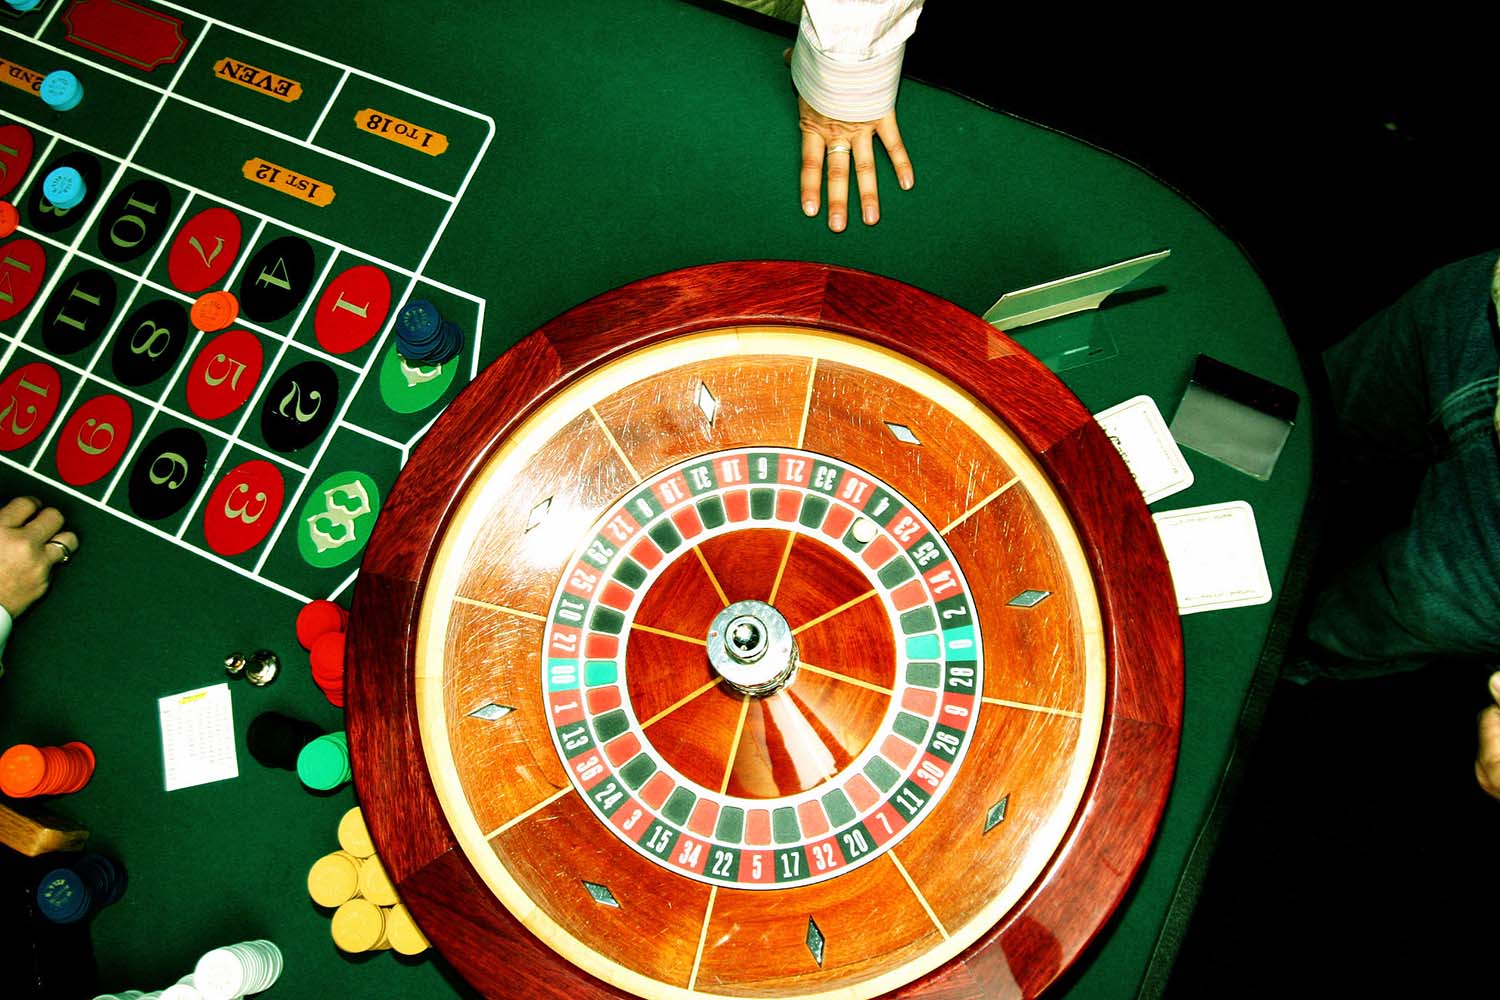 The Interior Design of Casinos